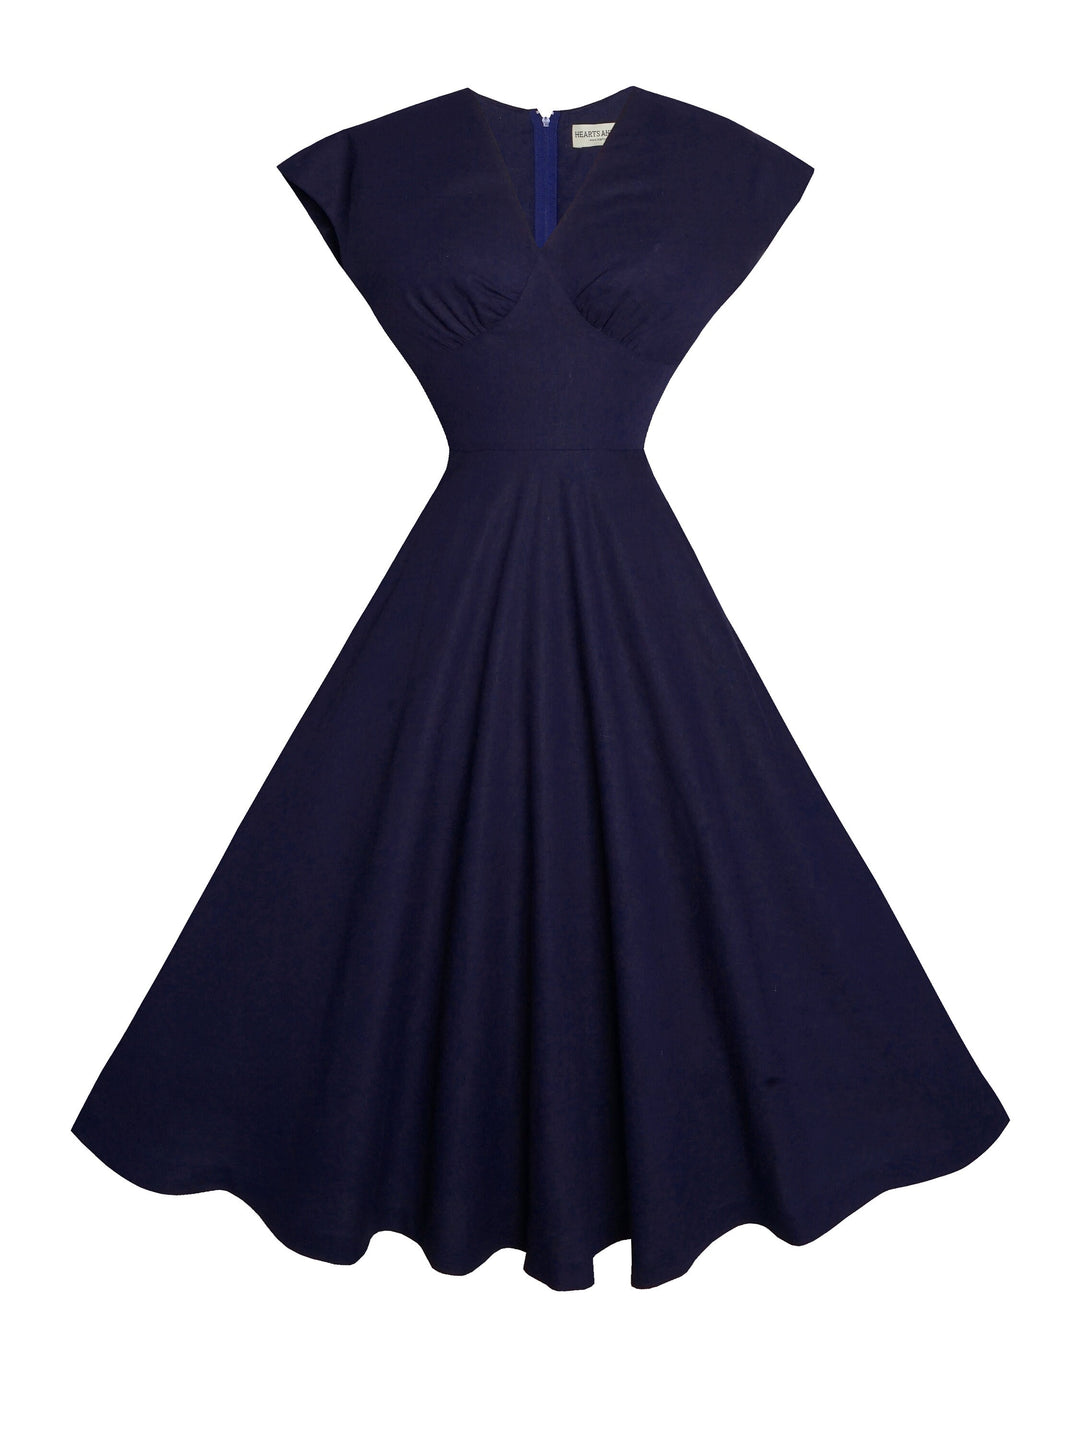 MTO - Kennedy Dress in Indigo Blue Linen